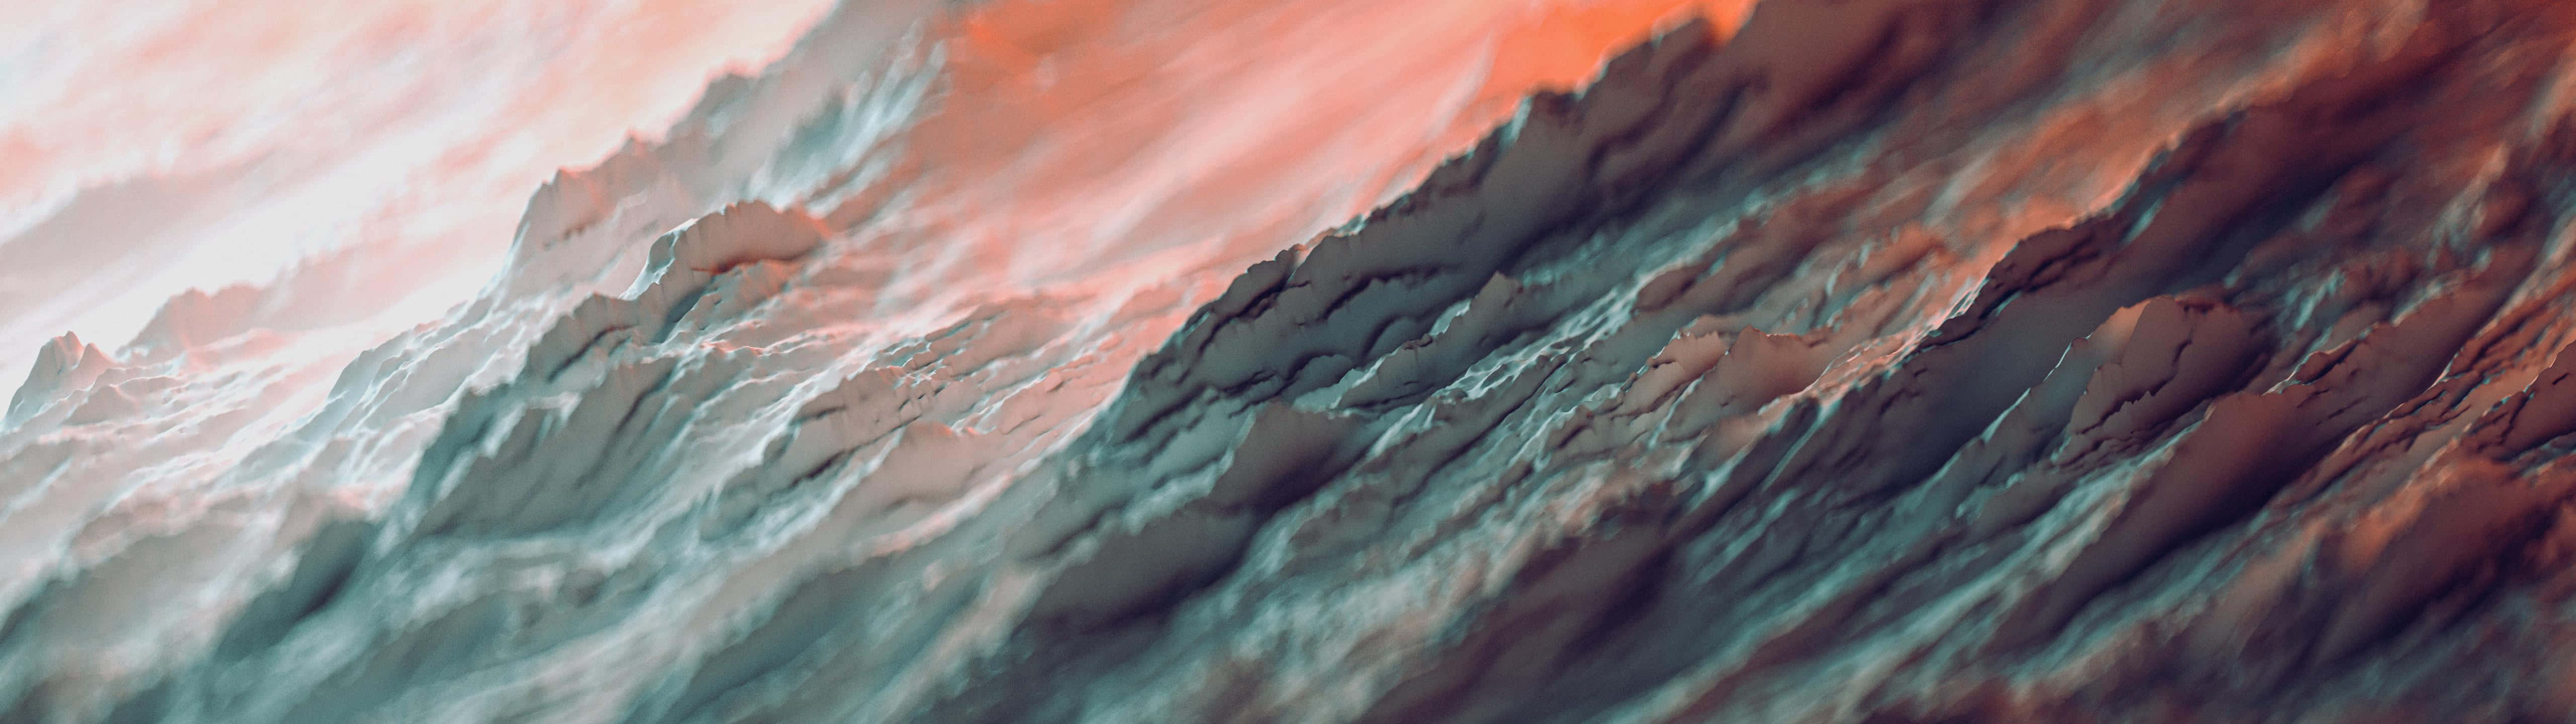 Unafoto De Una Montaña Con Un Cielo Rojo Y Naranja Fondo de pantalla